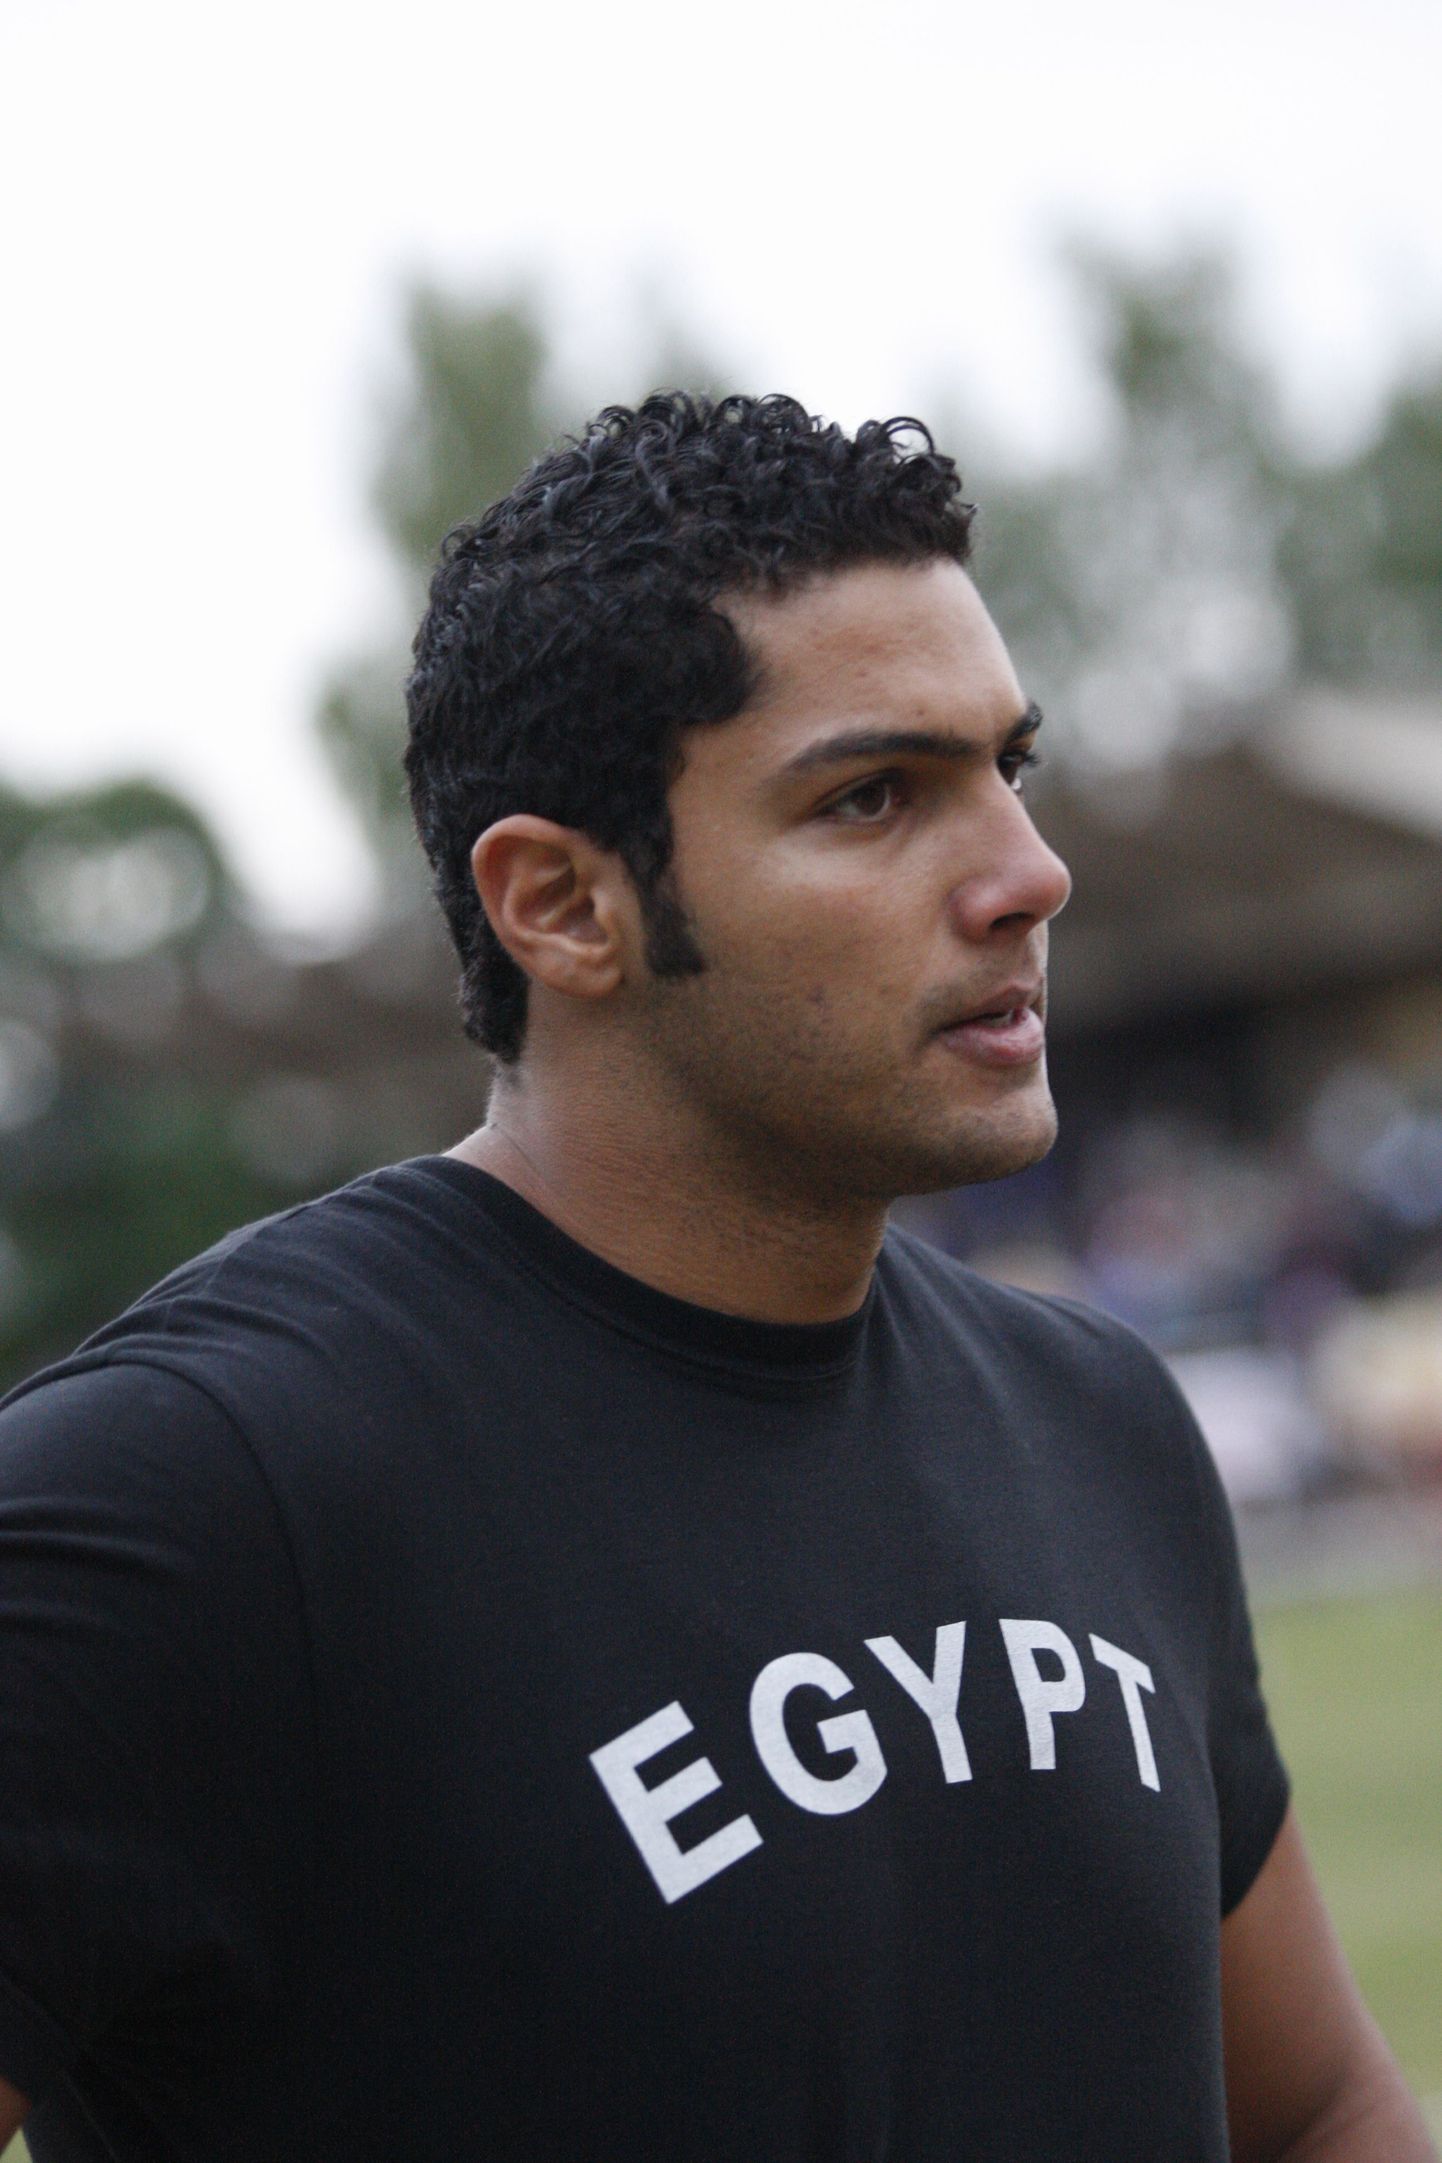 Omar El-Ghazaly